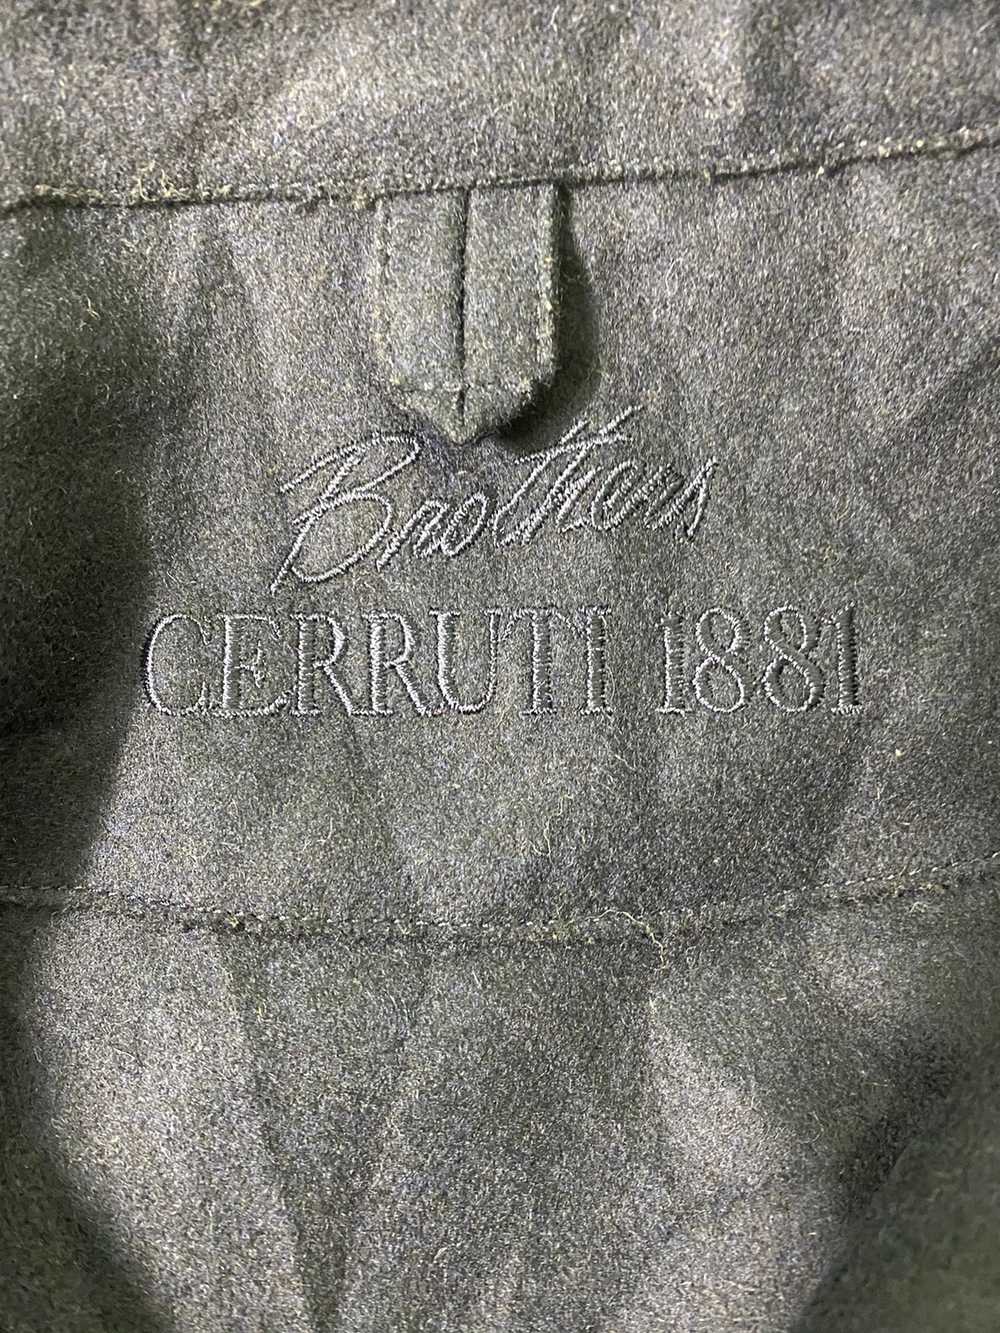 Cerruti 1881 - Brothers Cerruti 1881 Wool Jacket - image 3